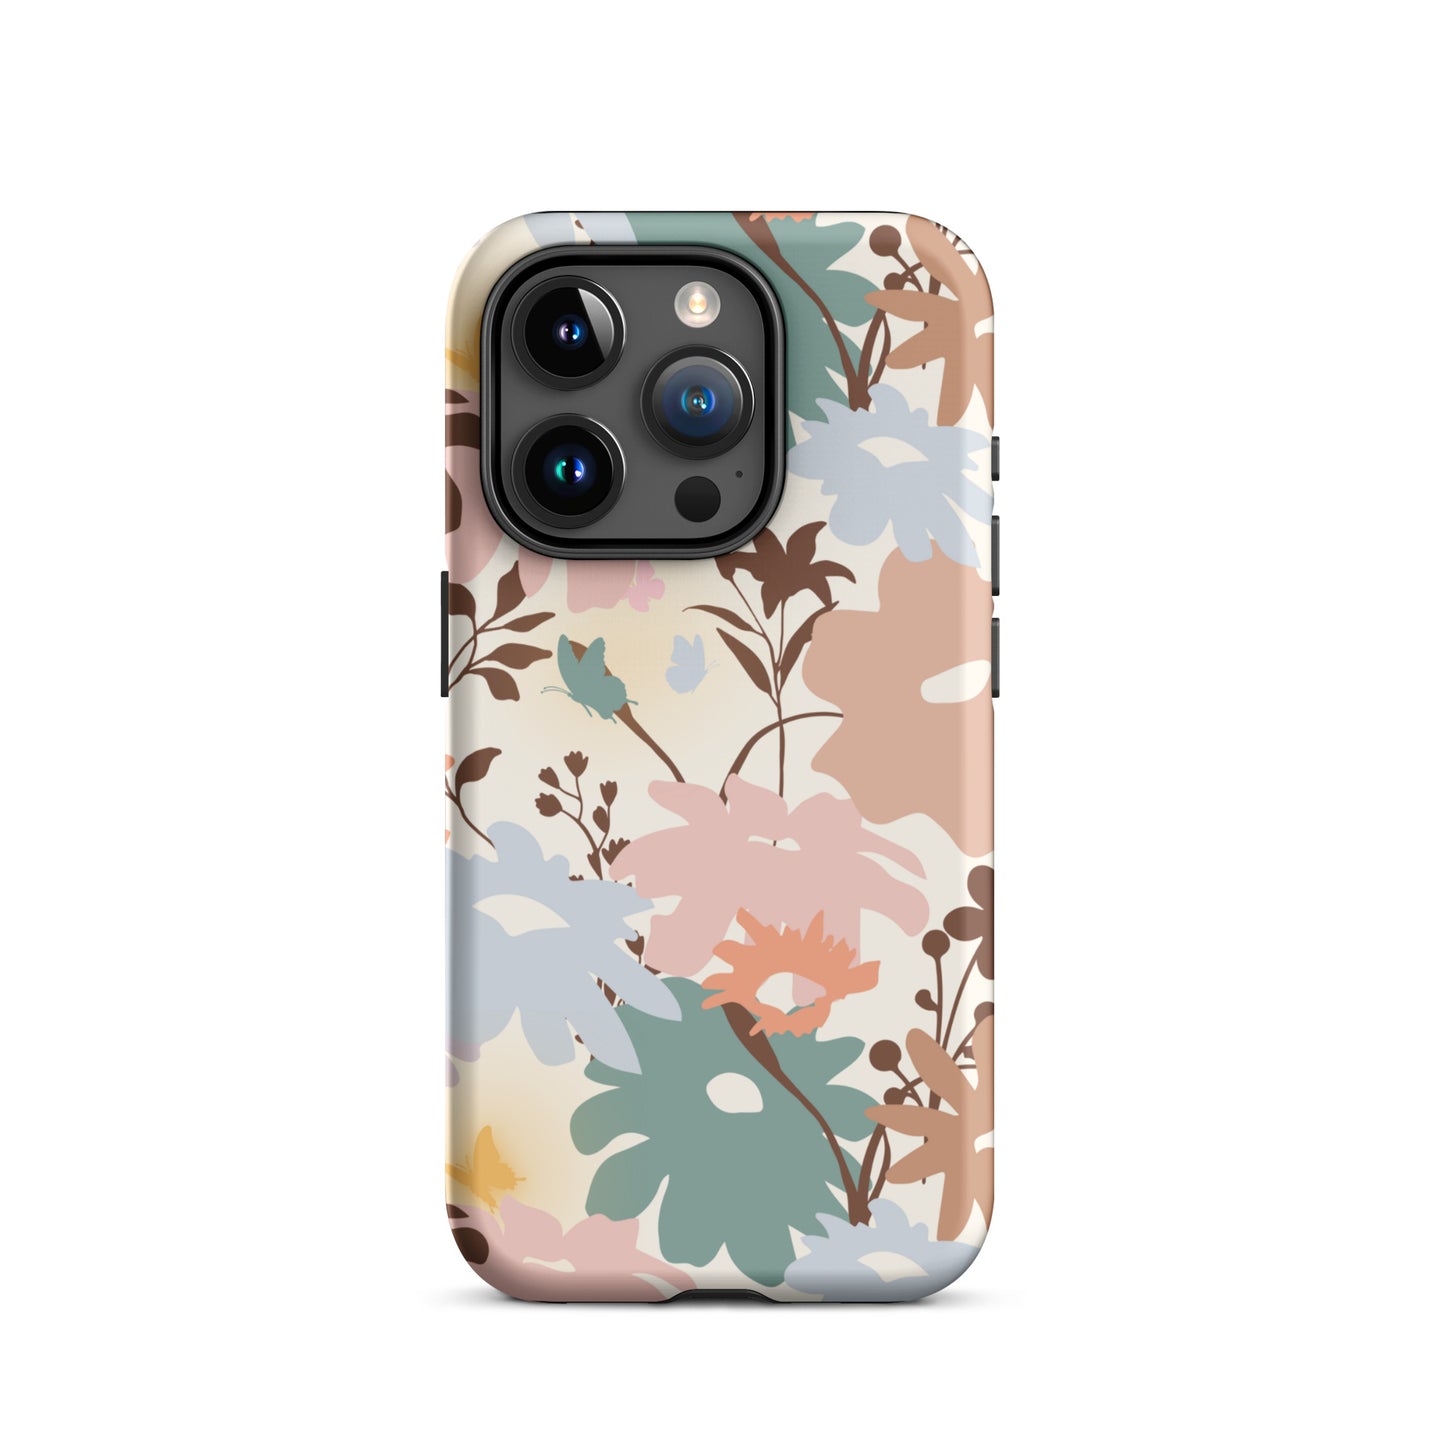 Retro Floral Fusion iPhone Case